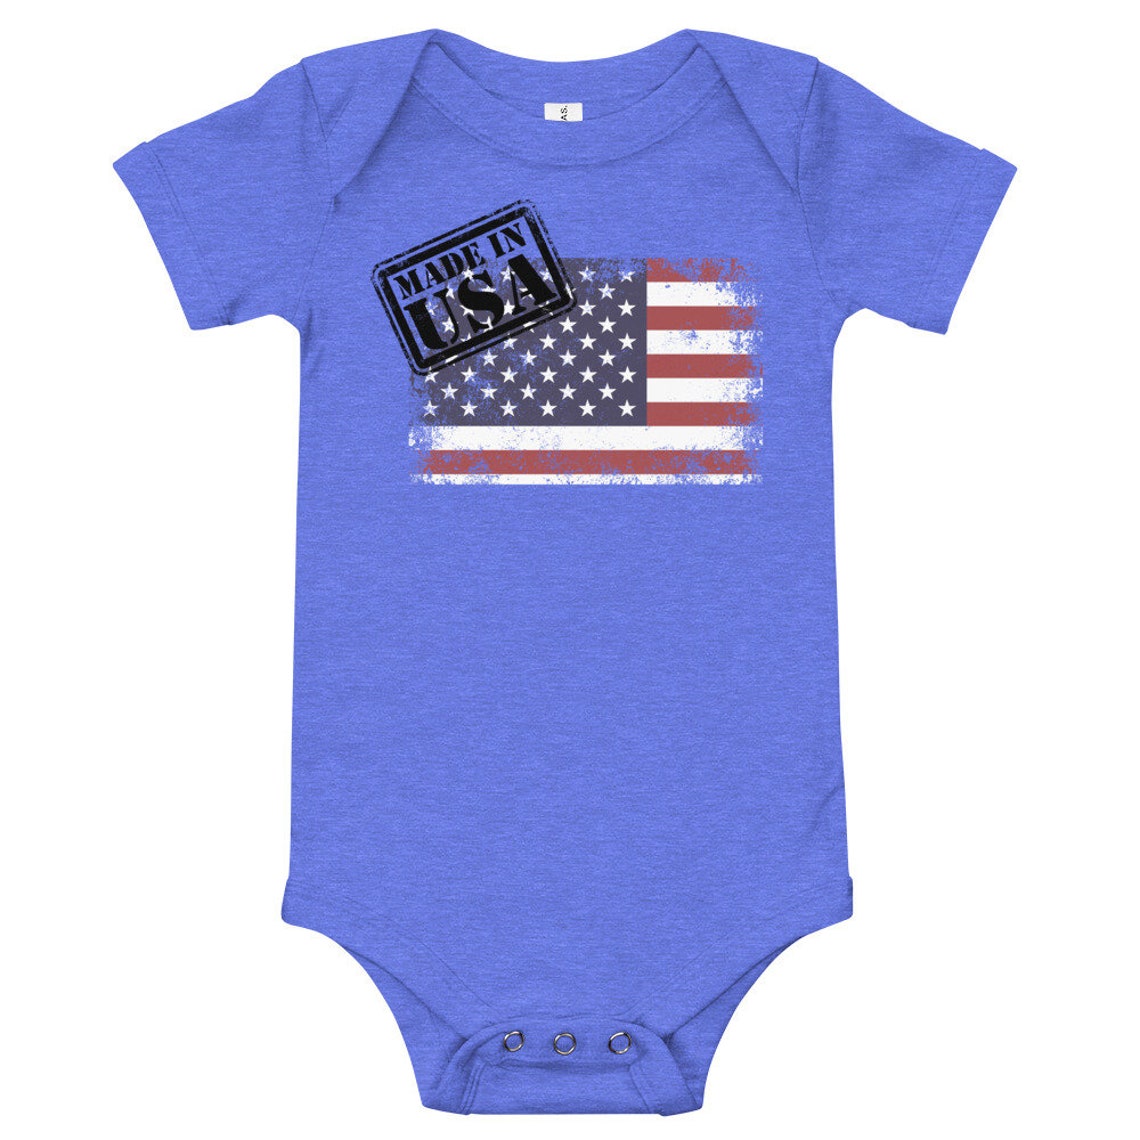 Made in USA Onsie Infant Clothing Cute Baby Onsie Baby | Etsy